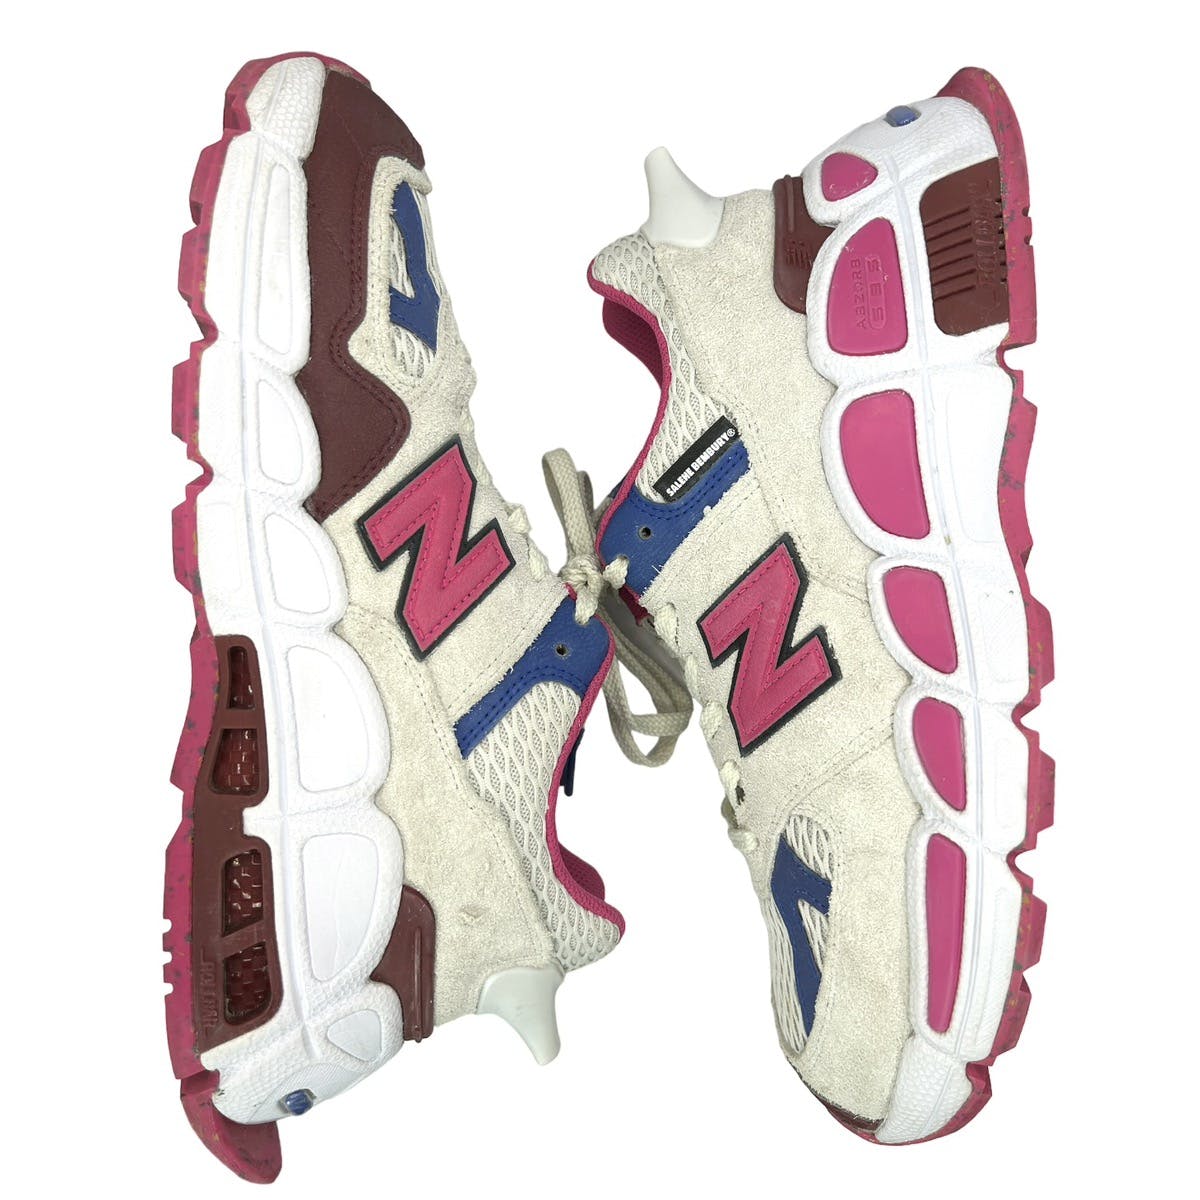 NB 574 “Yurt” Chunky Sneakers - 2